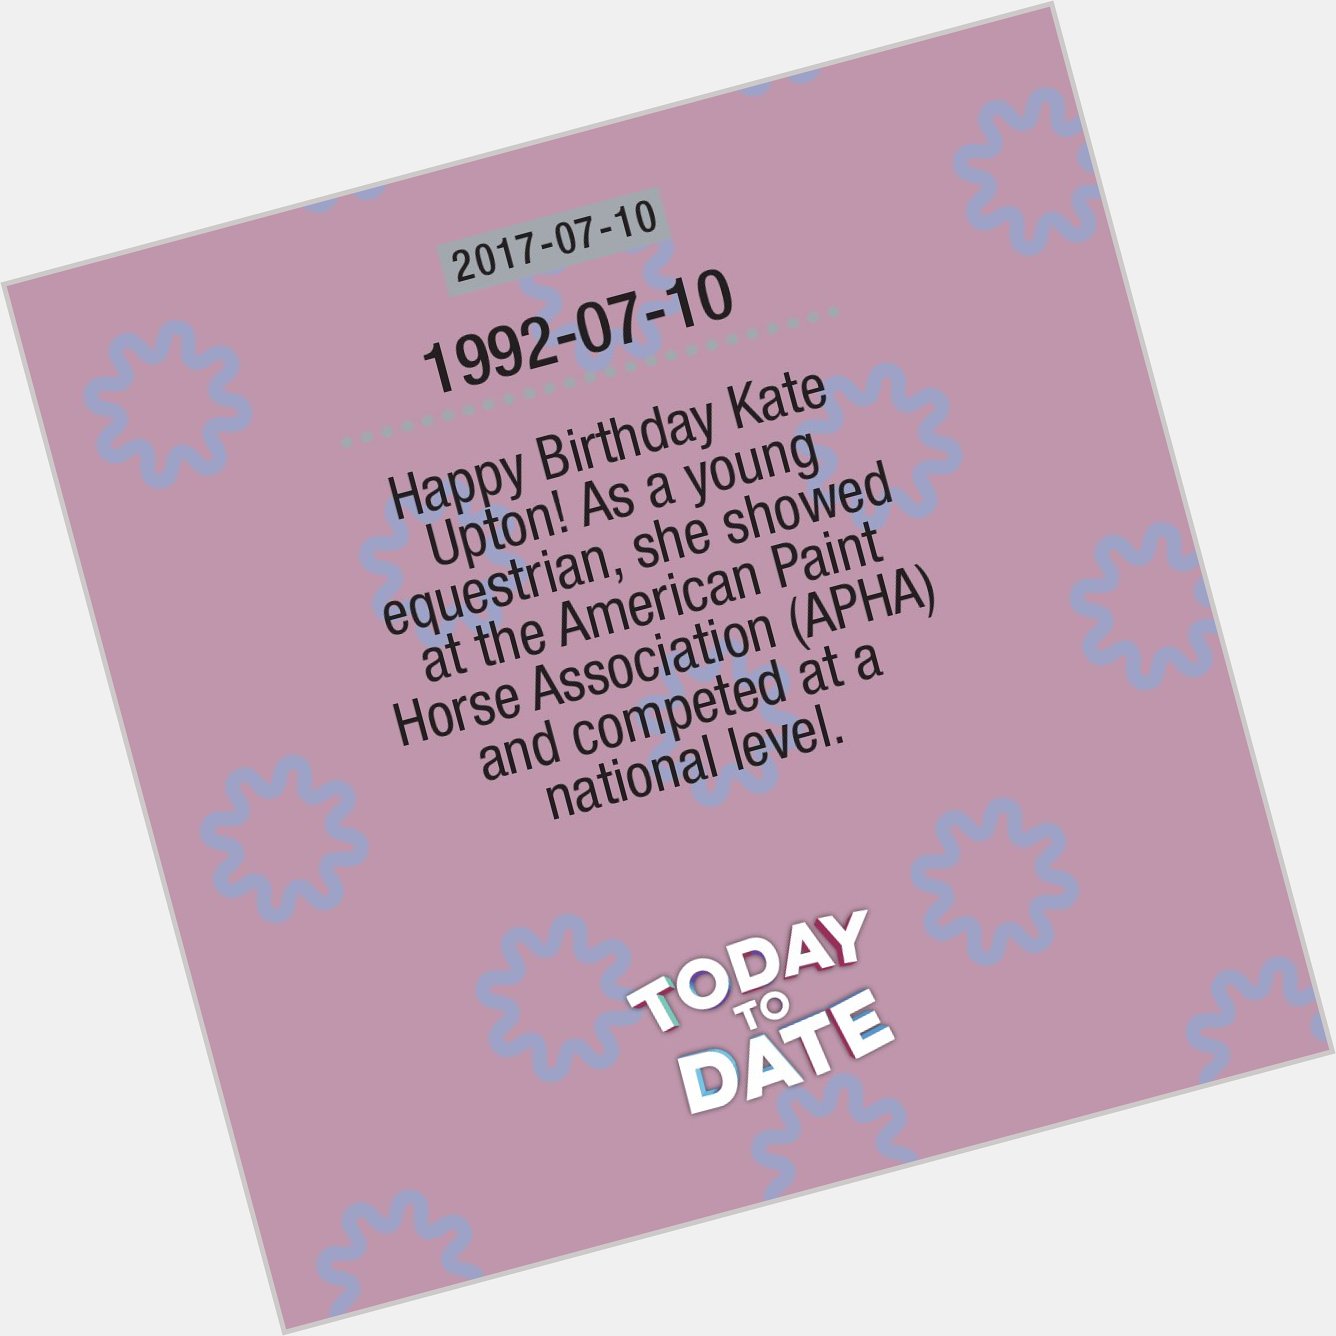 2017-06-10: Happy Birthday Kate Upton birthday     